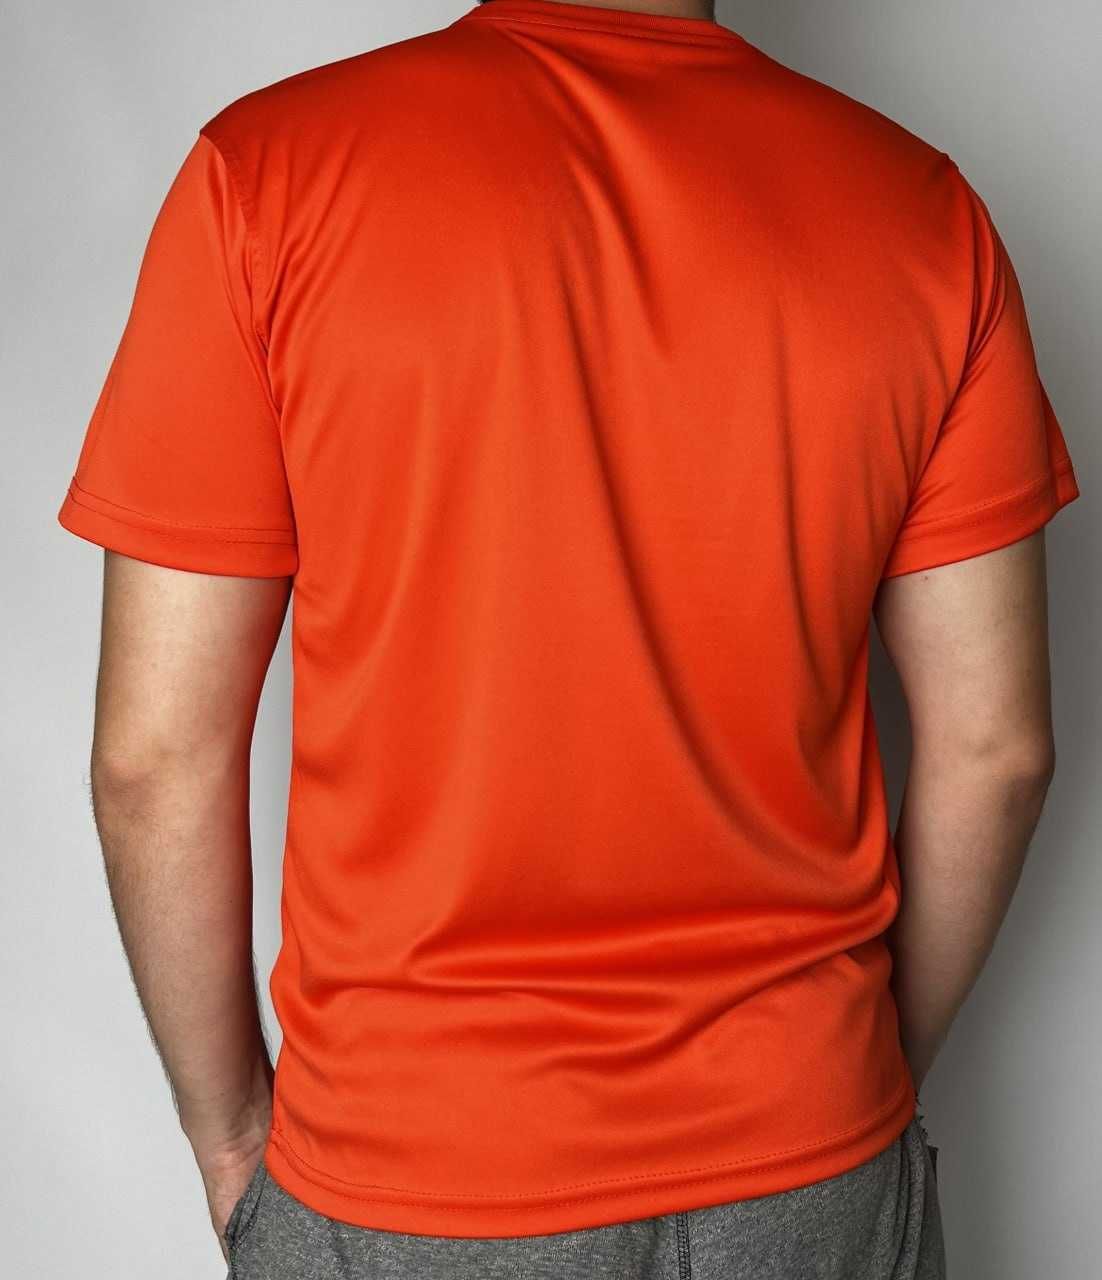 Чоловіча футболка для заняття спортом, активного відпочинку